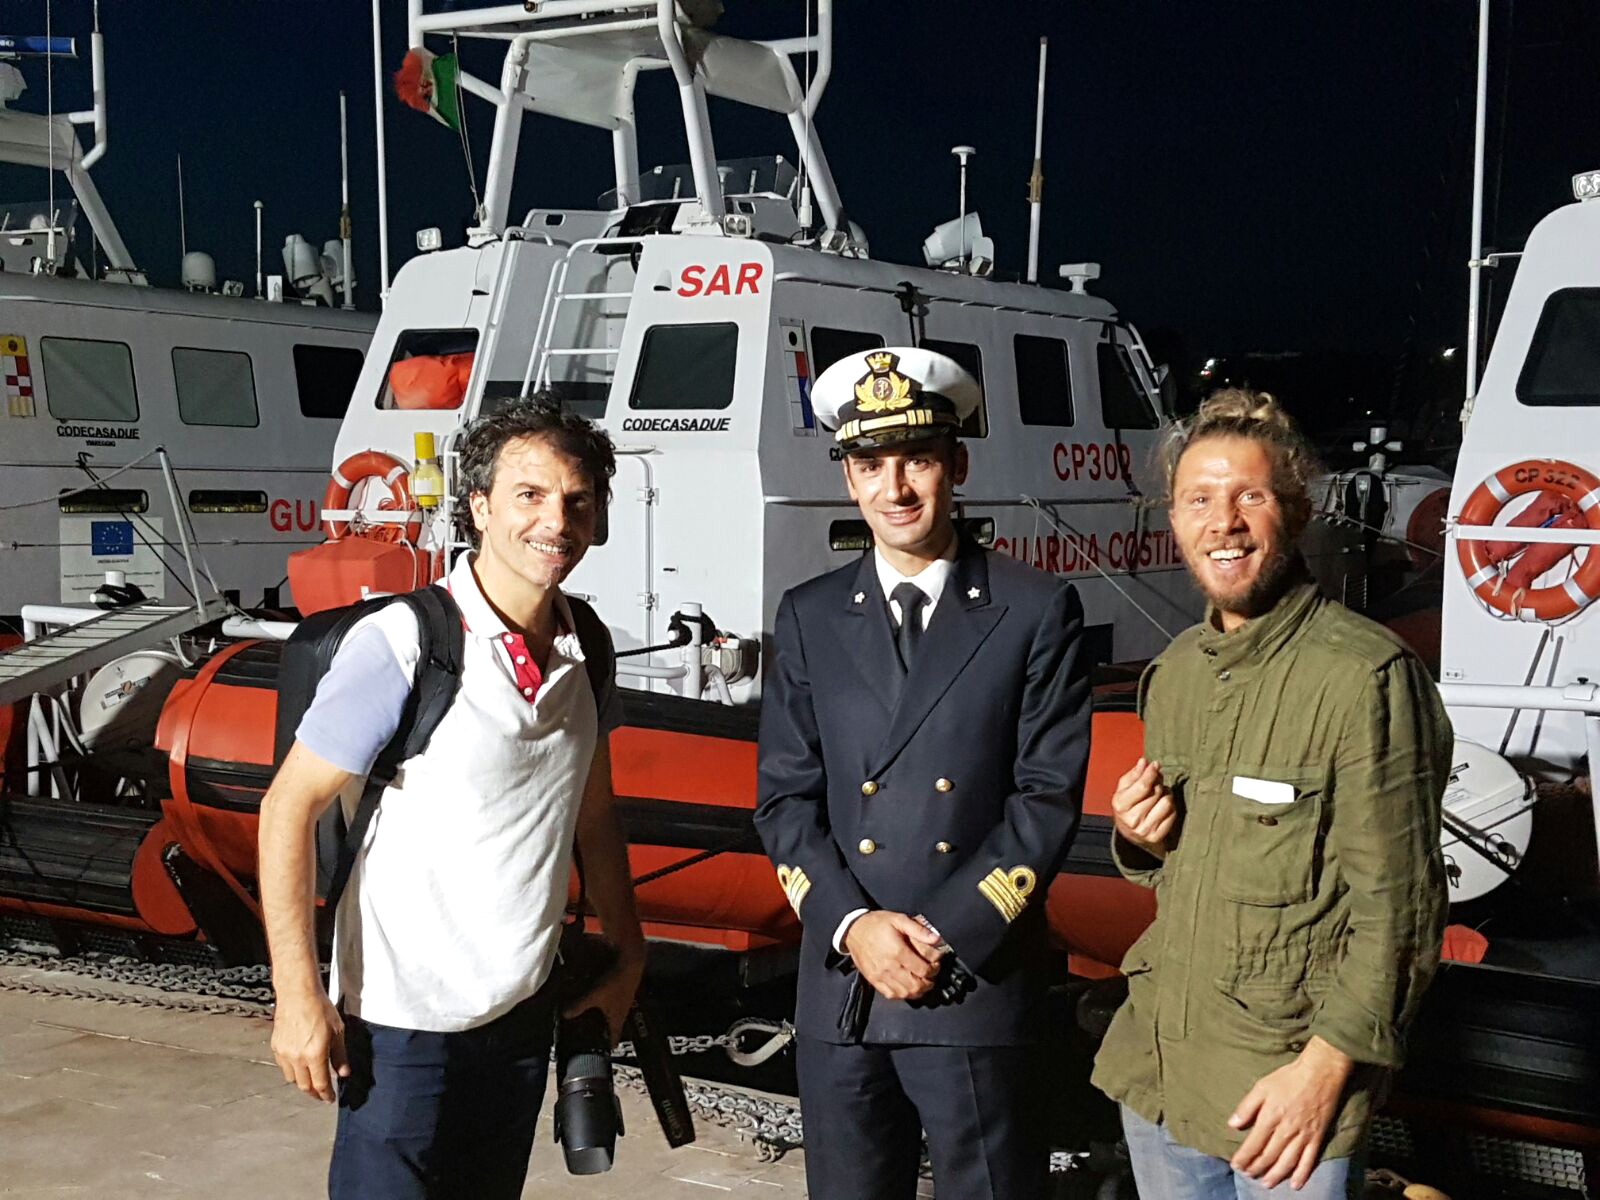 Il direttore della fotografia Bennica, il comandante della Guardia costiera Monaco e Lo Piero